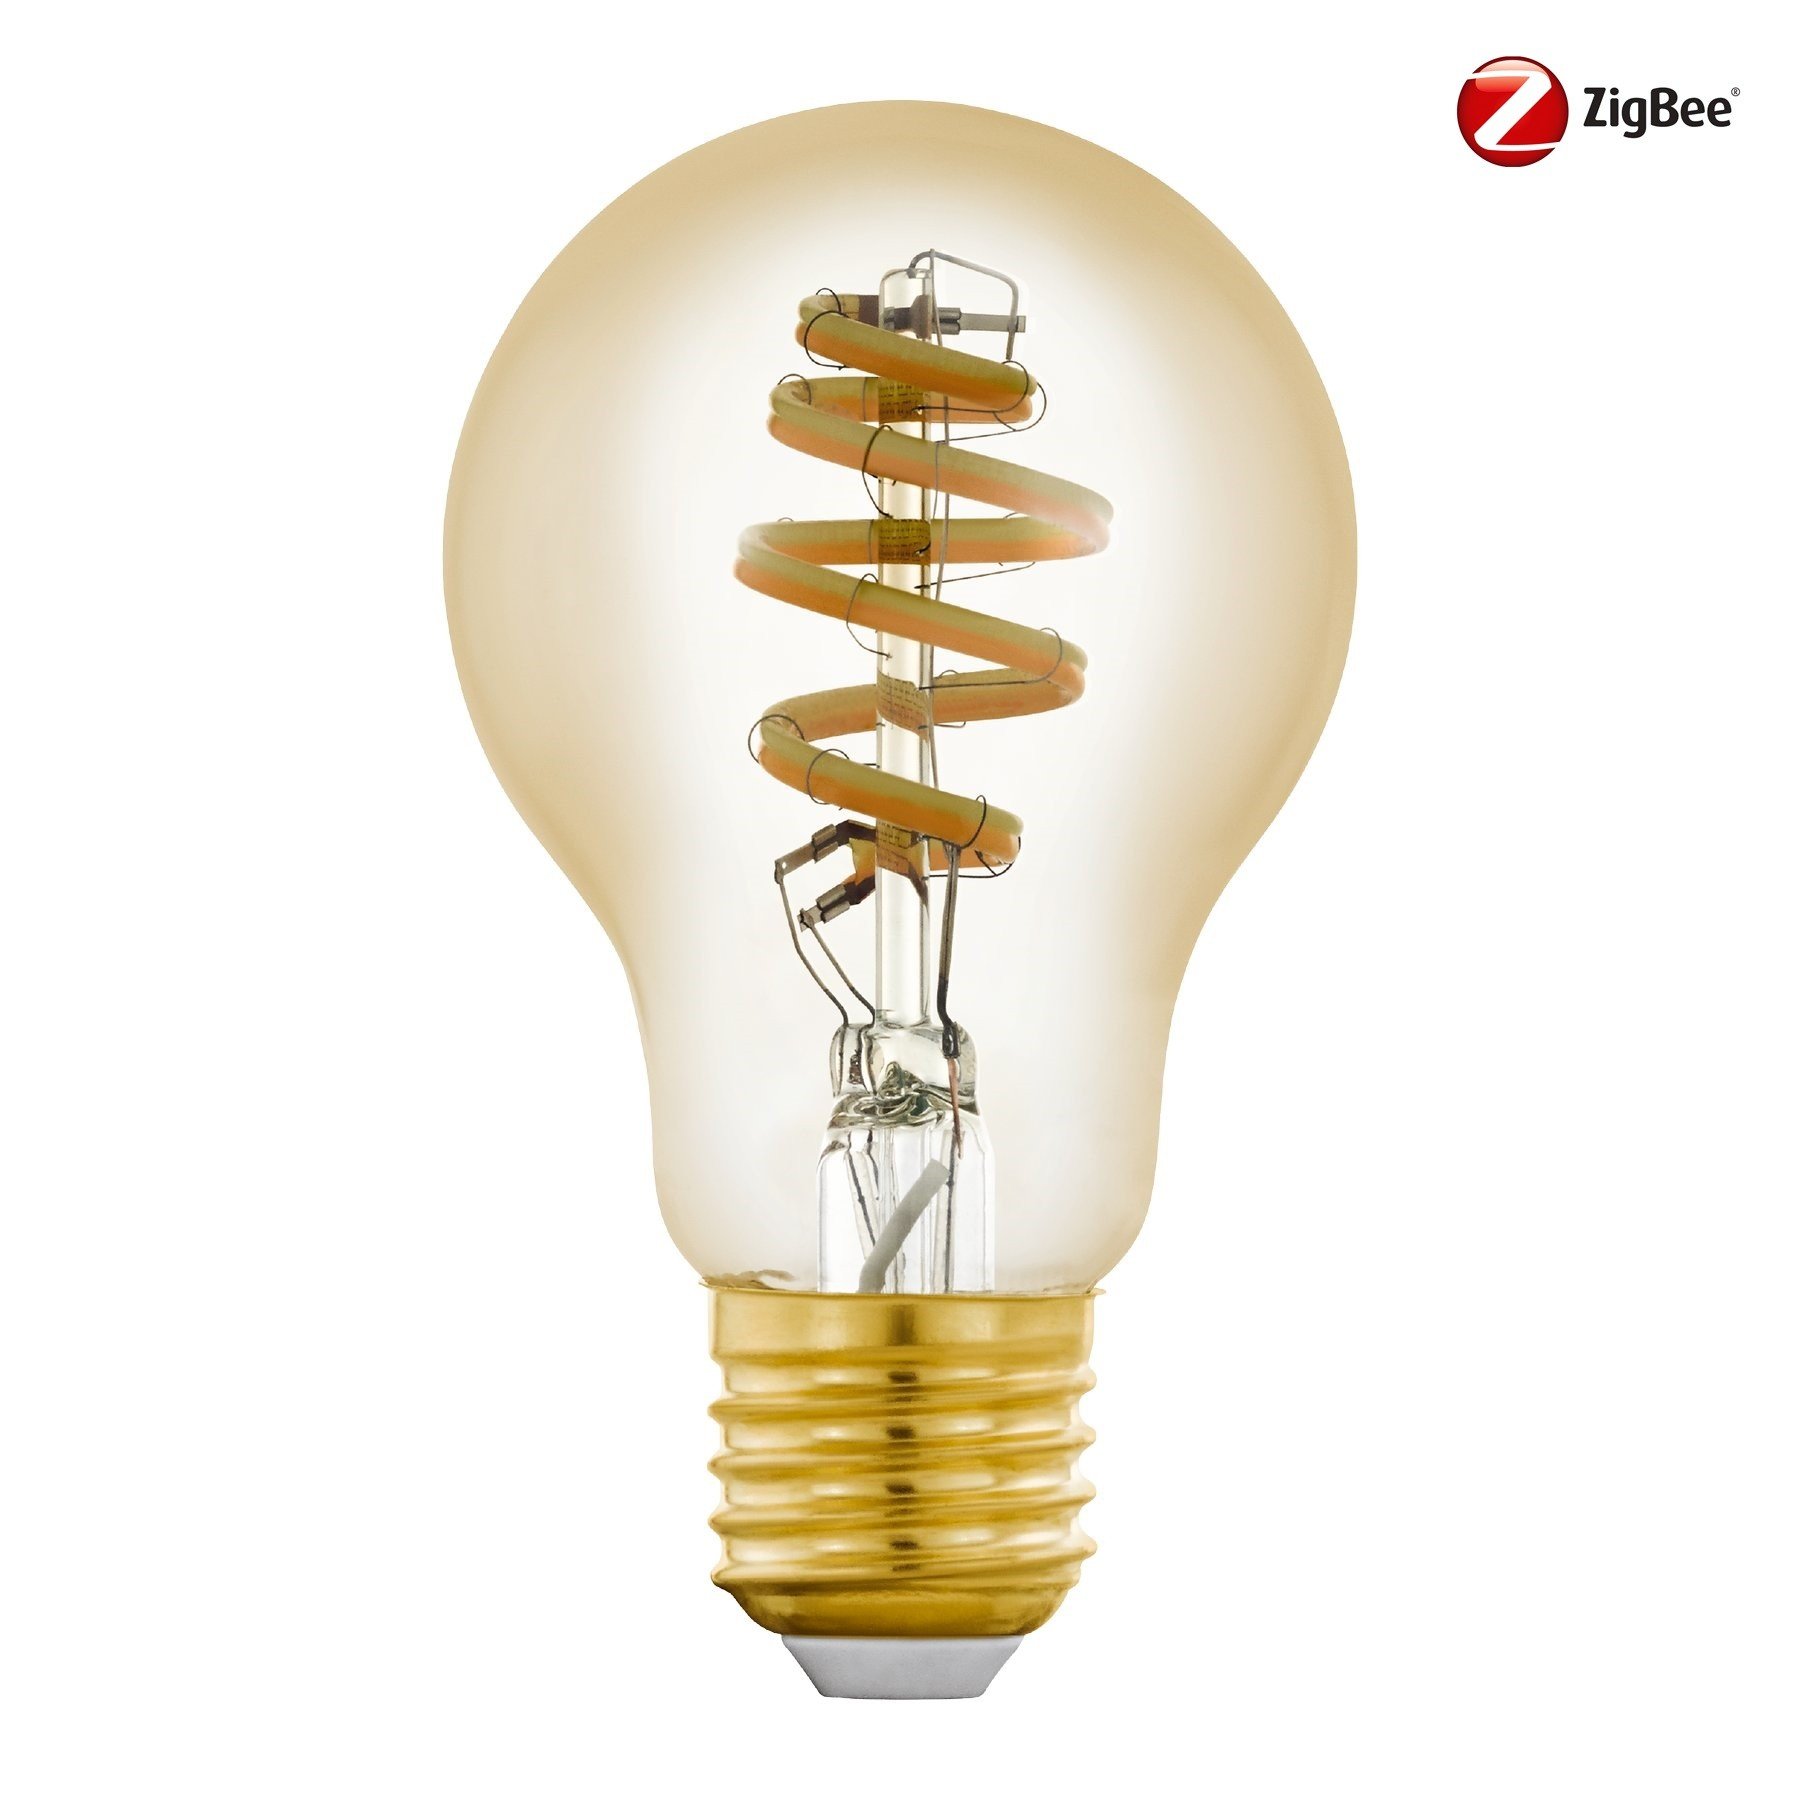 EGLO Connect-Z Zigbee Filament LED Lamp 6 Watt 400Lm A60 Lampenhuis